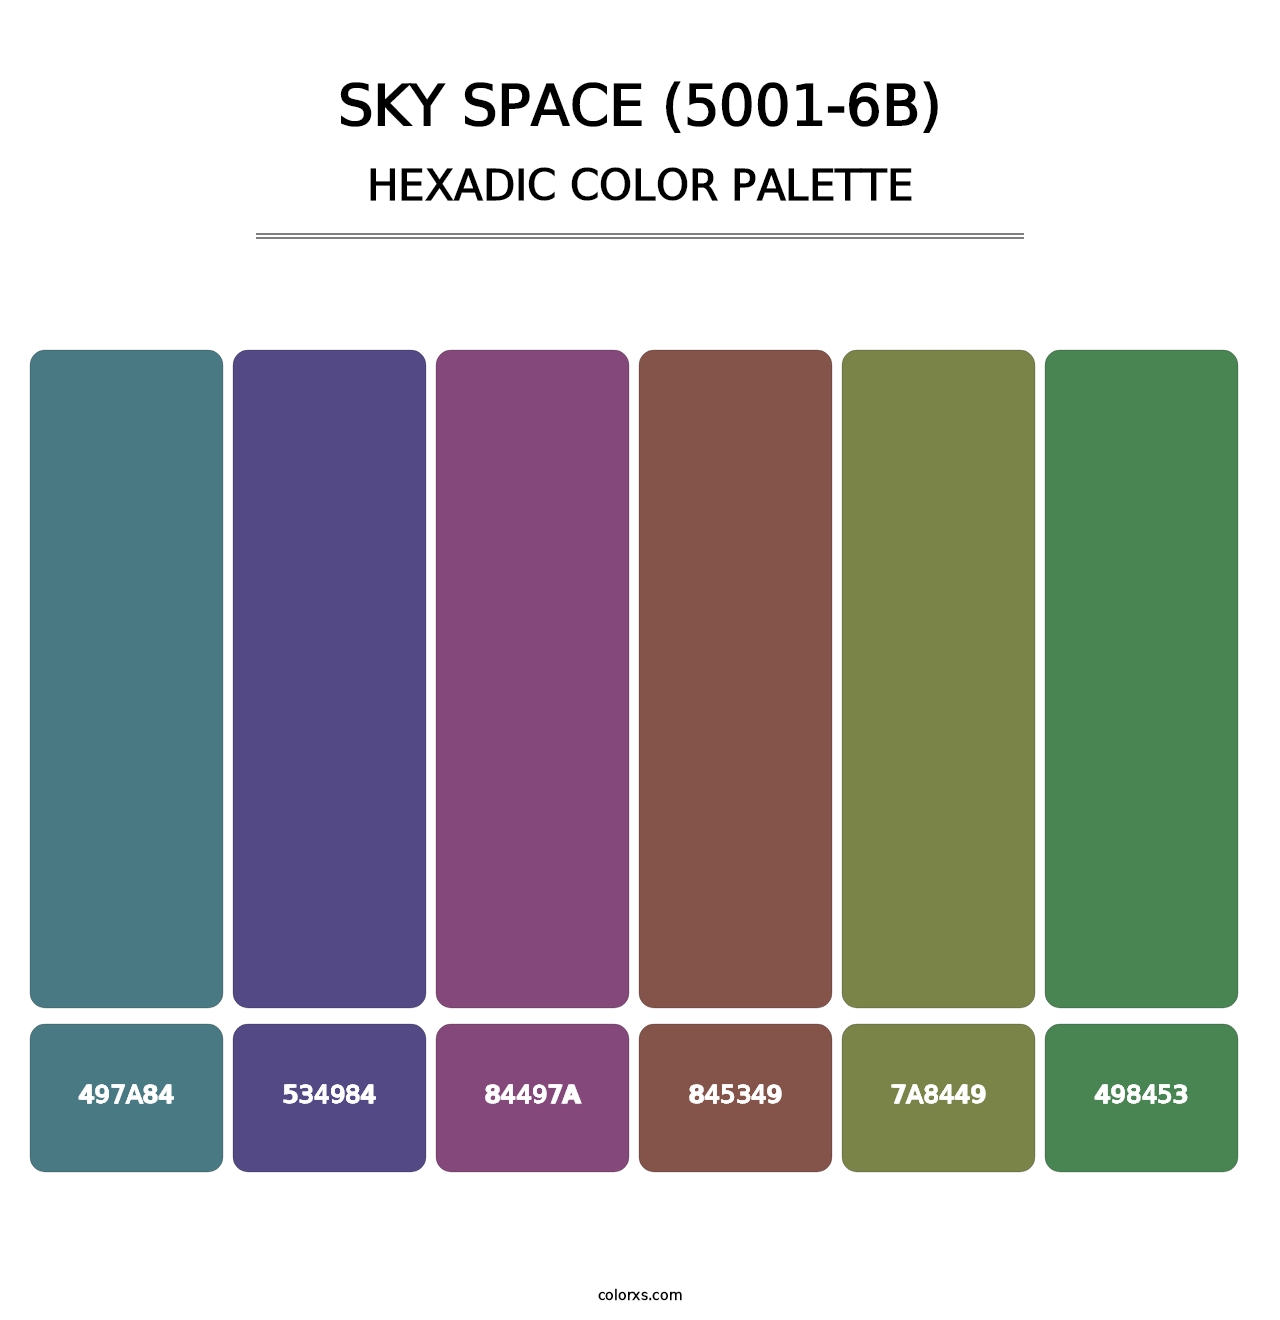 Sky Space (5001-6B) - Hexadic Color Palette